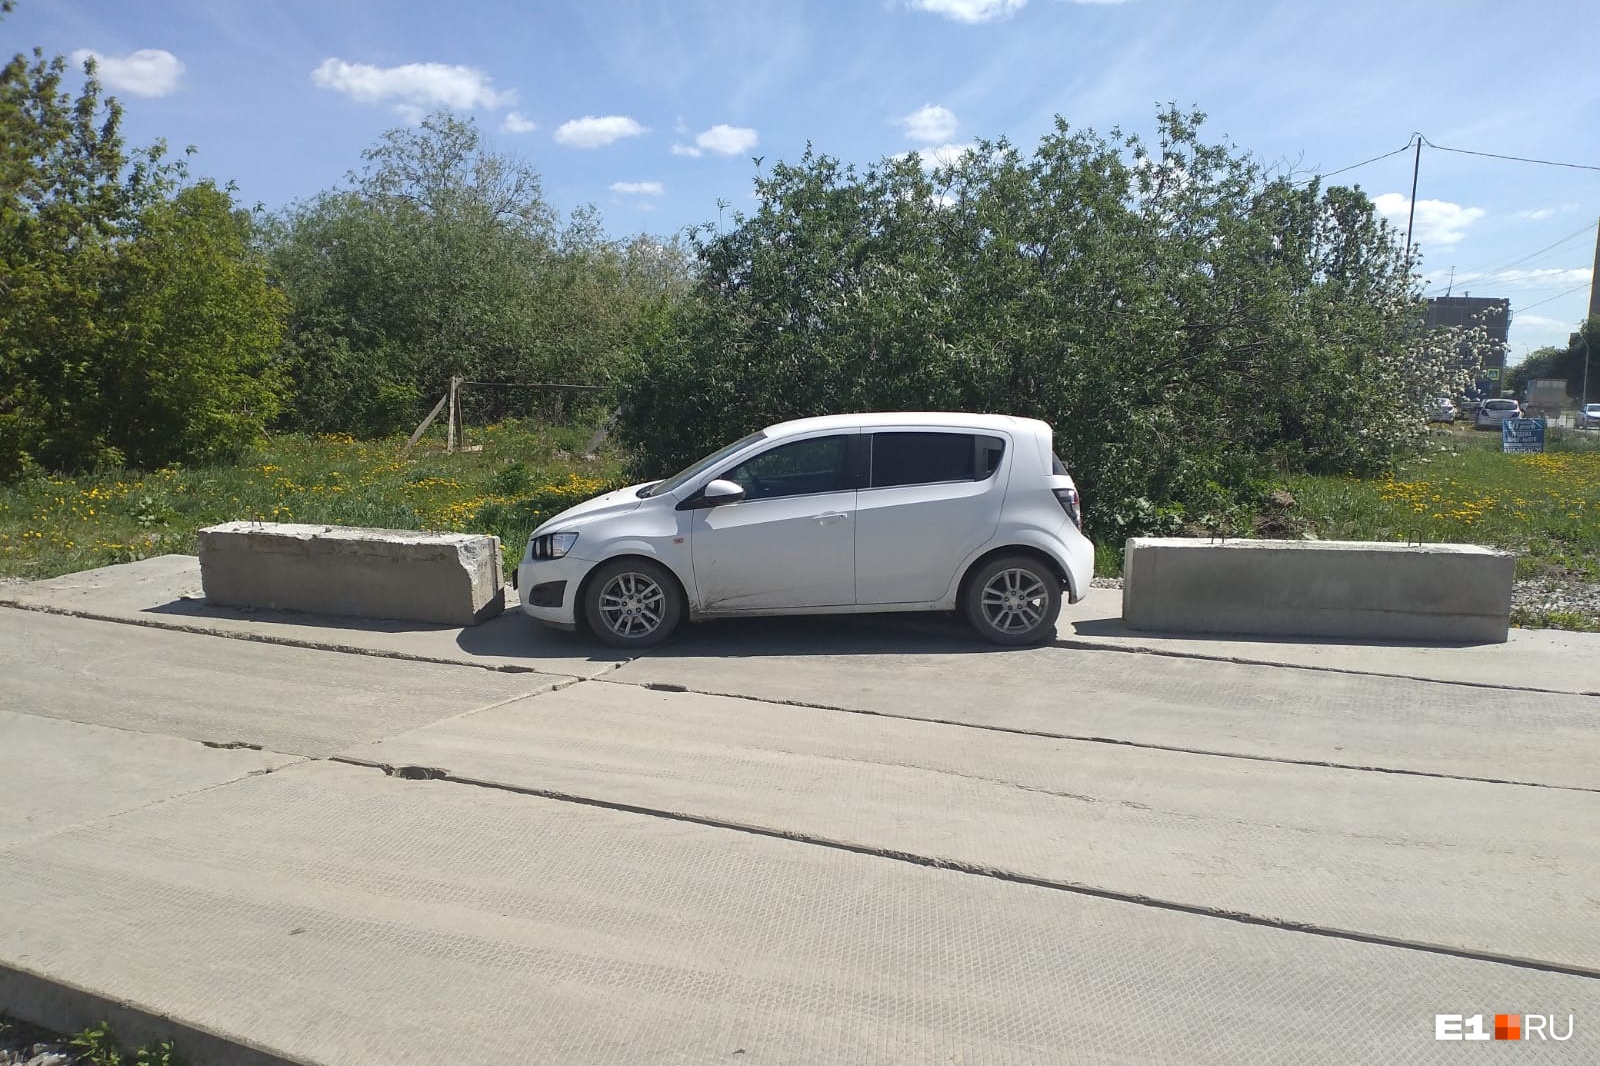 В Екатеринбурге строители забаррикадировали автомобиль, который мешал им проехать. Видео